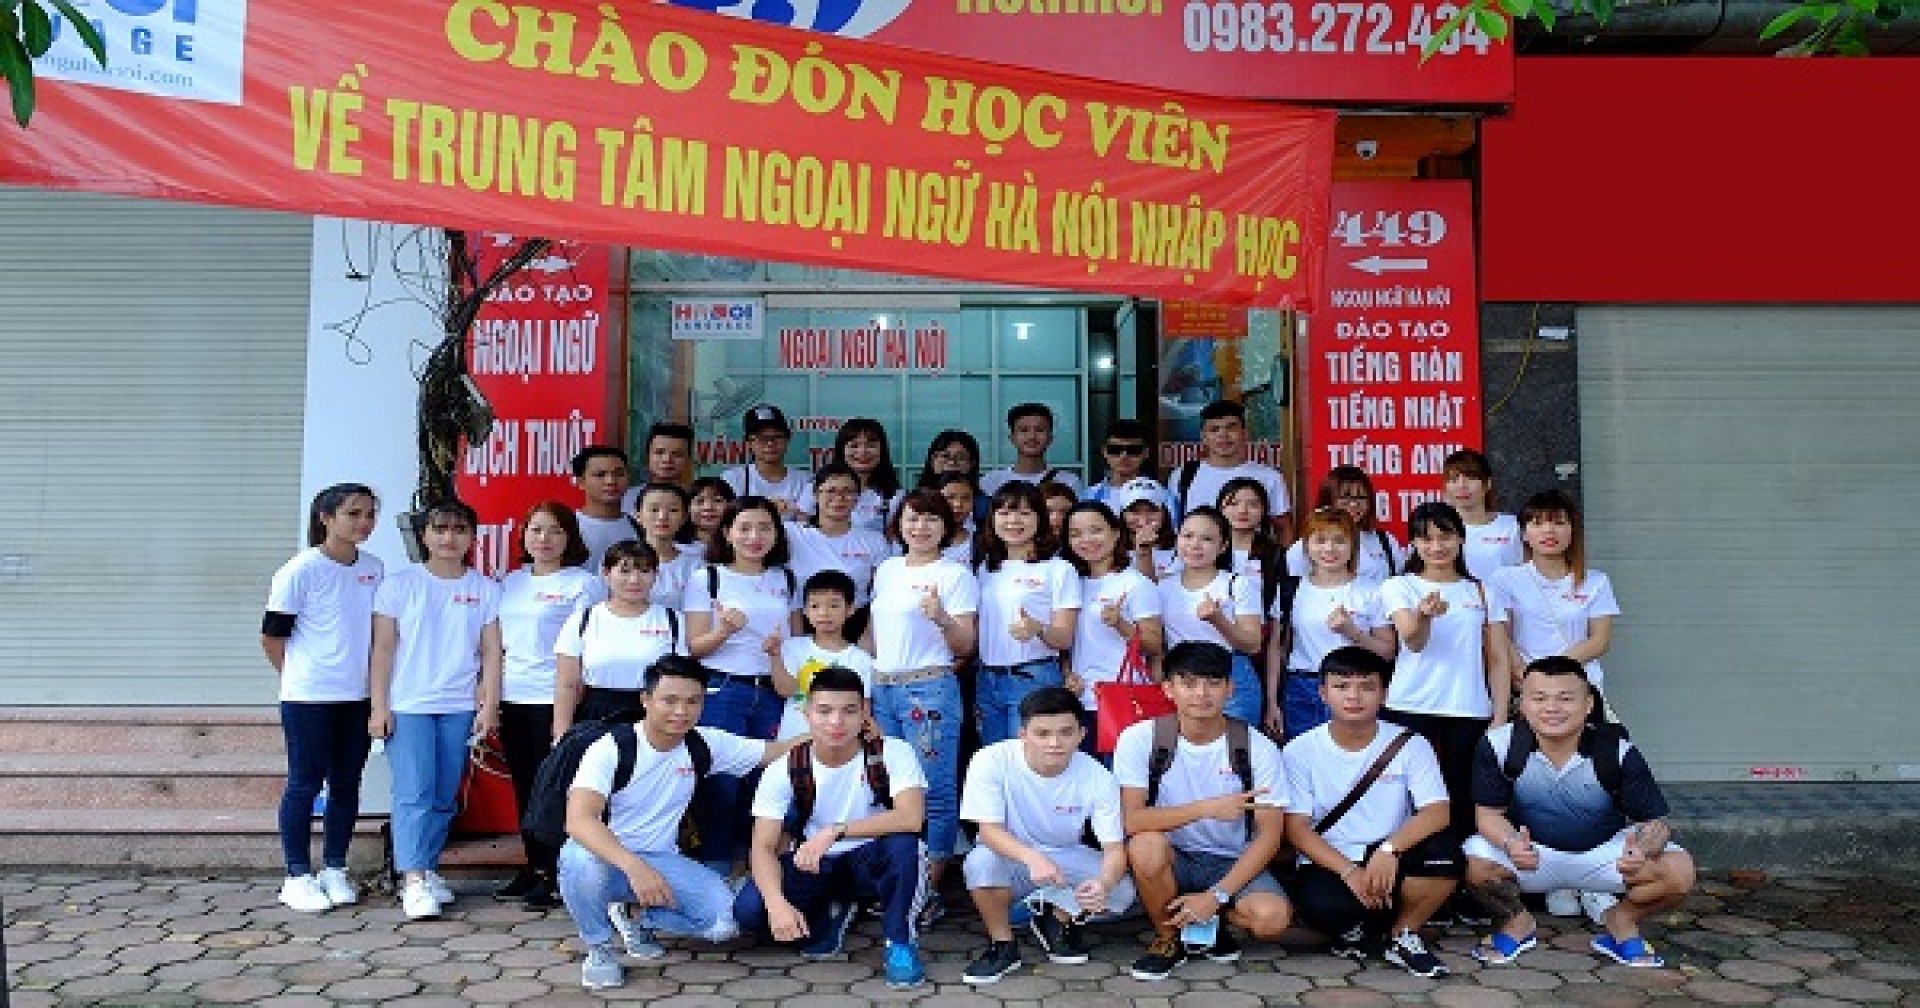 Thông tin nóng hổi về các khóa học tại trung tâm Ngoại ngữ Hà Nội mà bạn cần biết